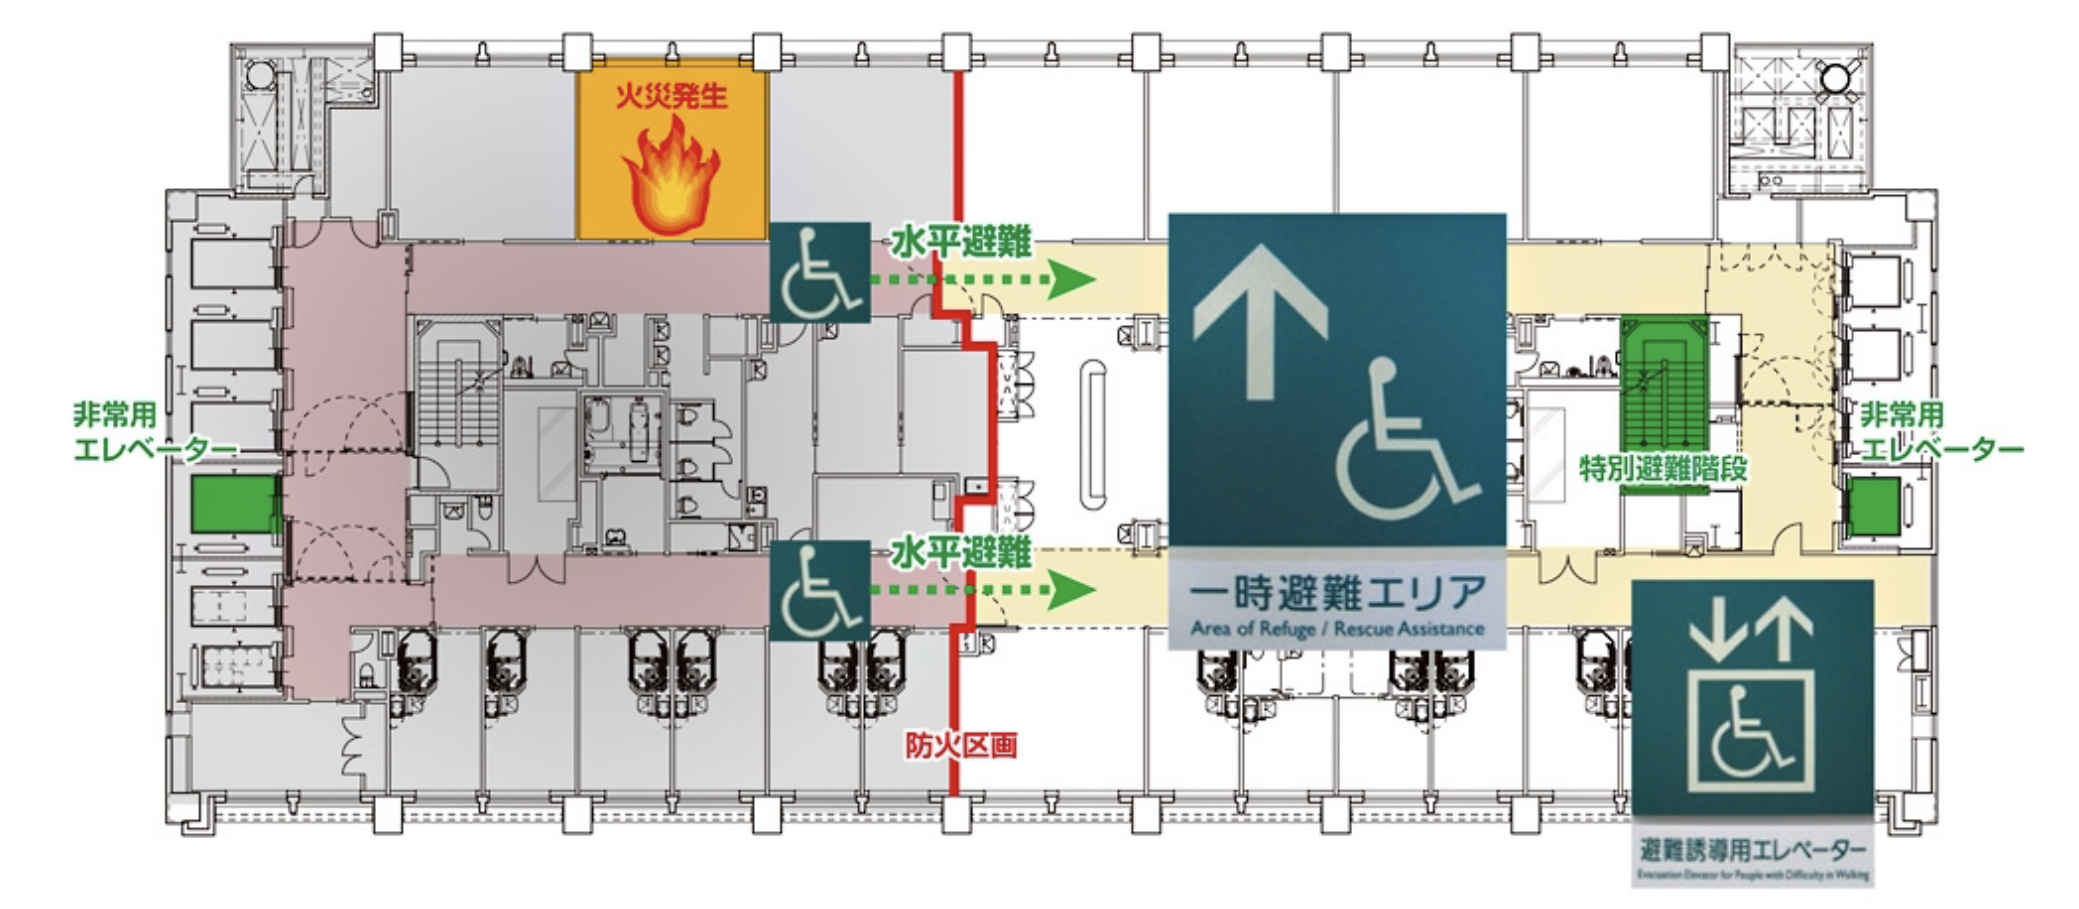 标准层平面以及“消防楼梯”和“避难电梯”.jpg